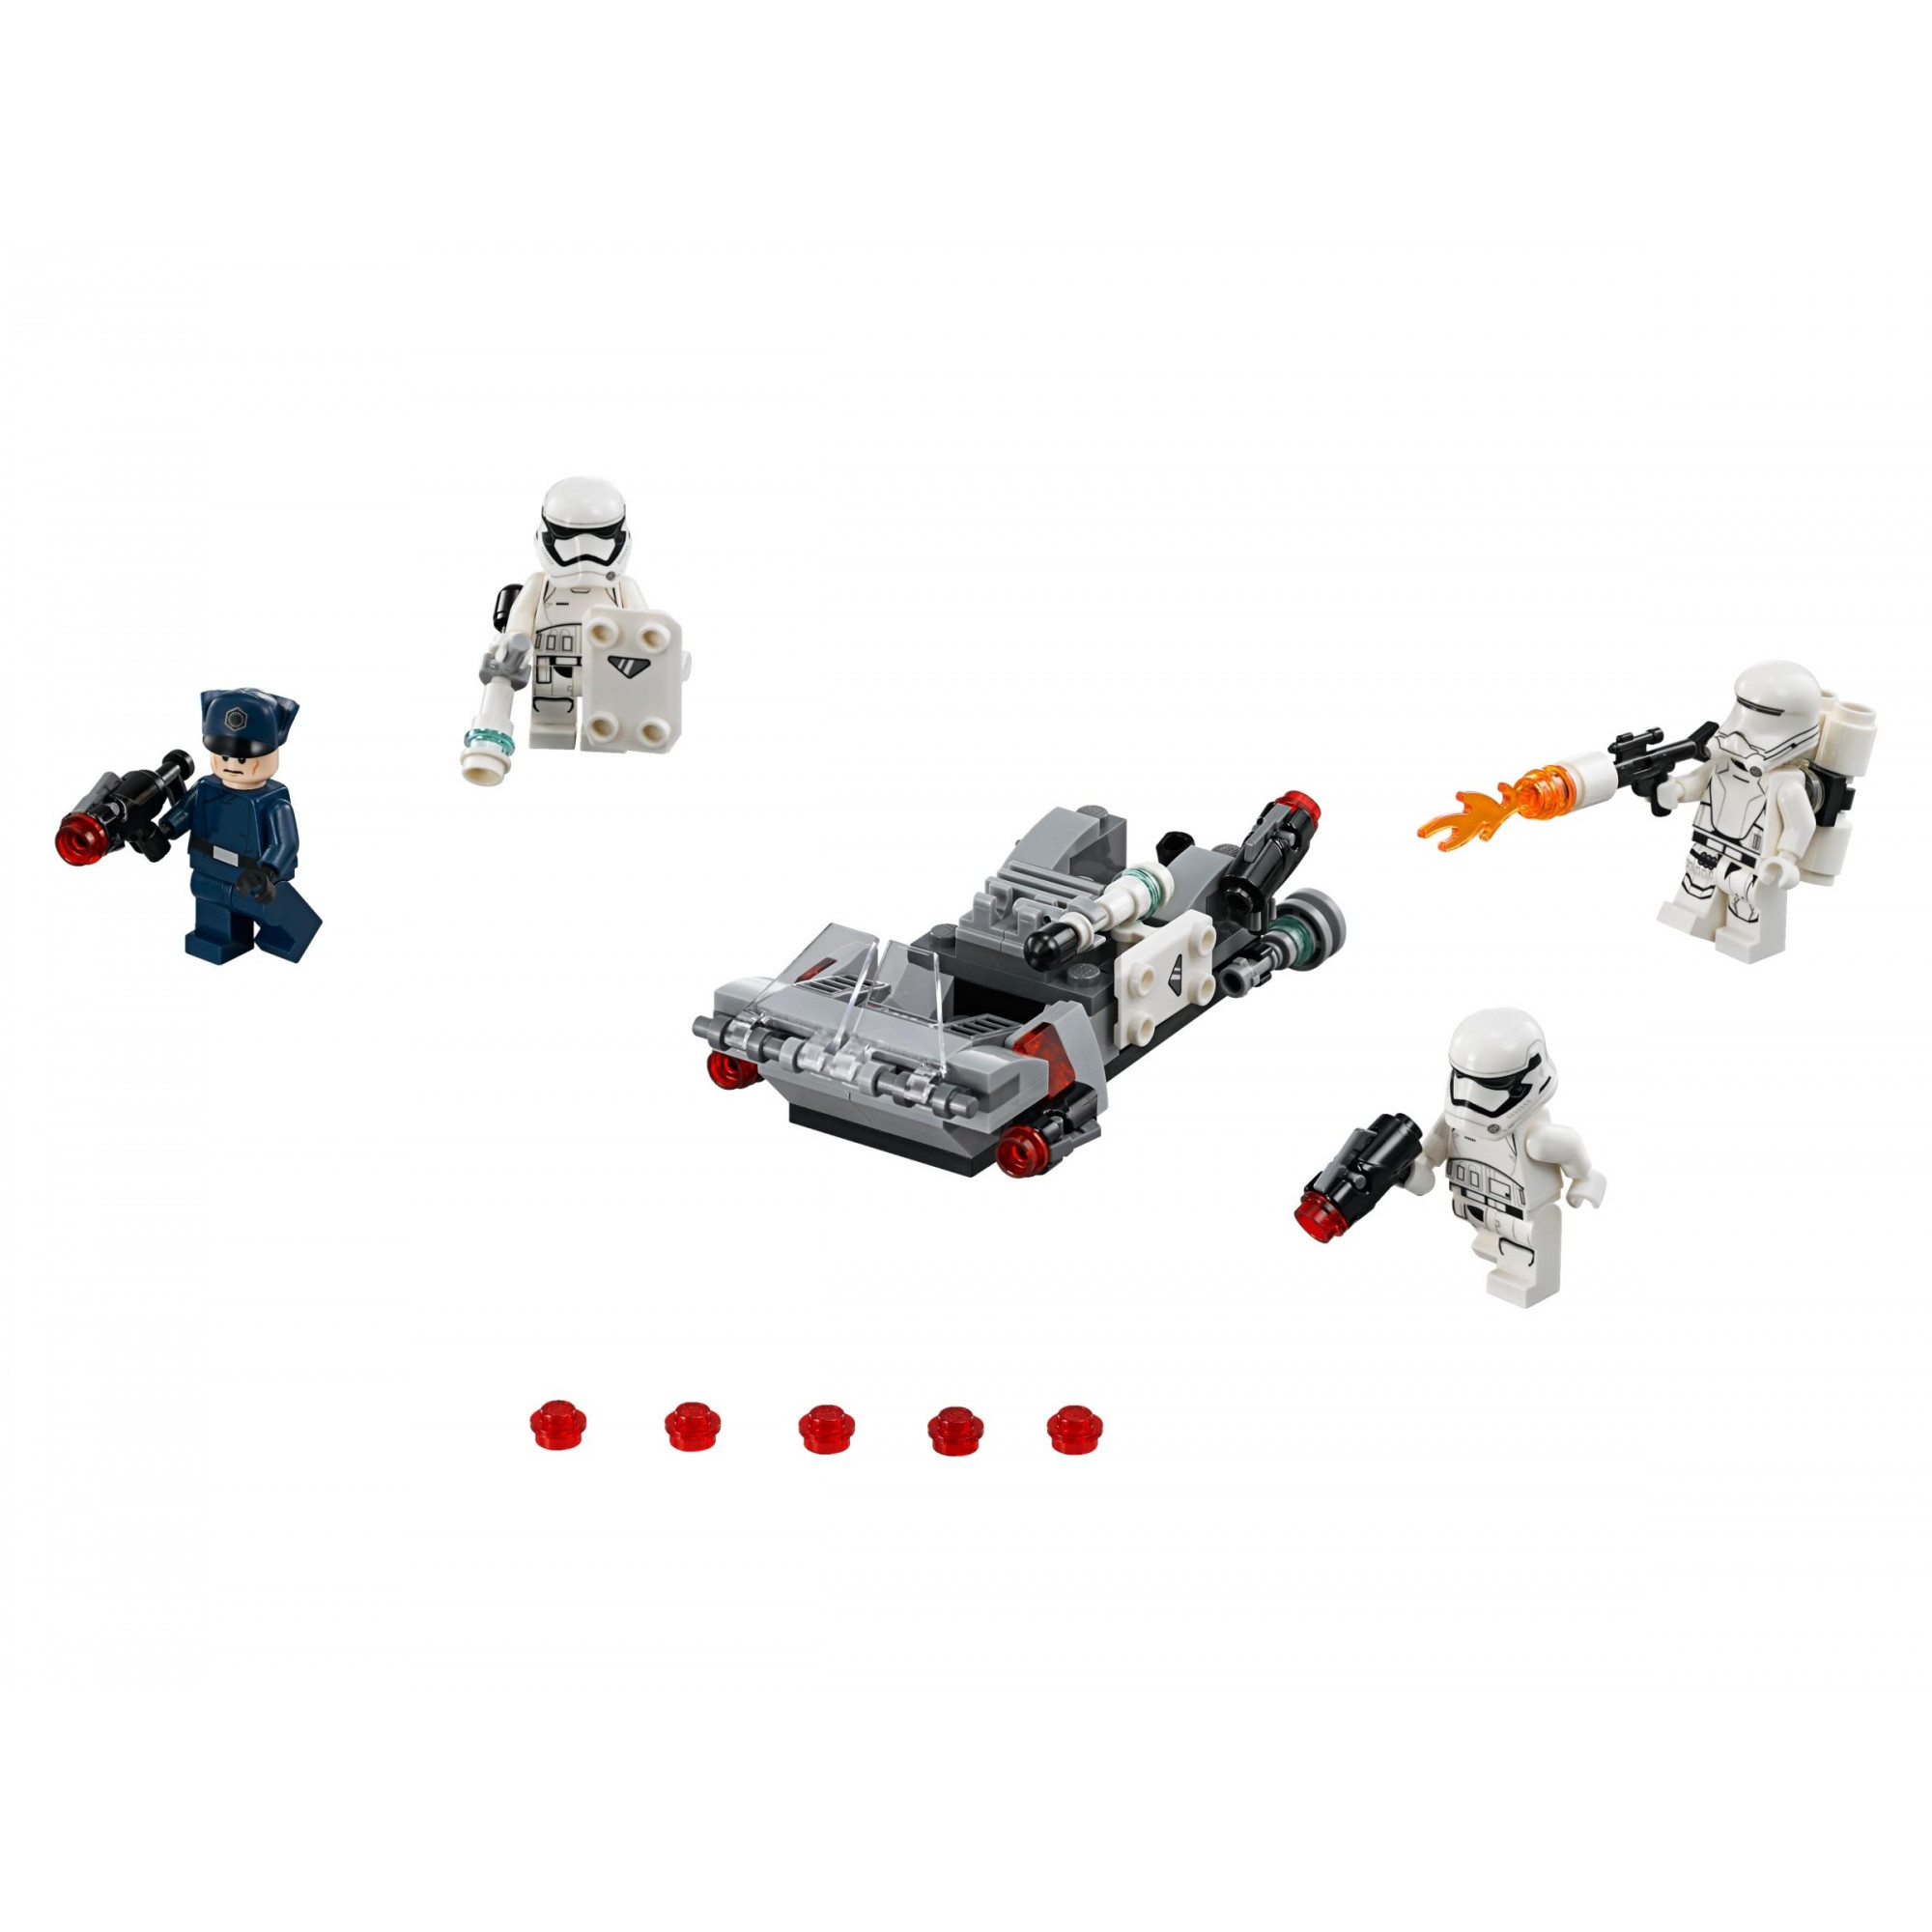 LEGO Star Wars Спидер Первого ордена (75166) - зображення 1